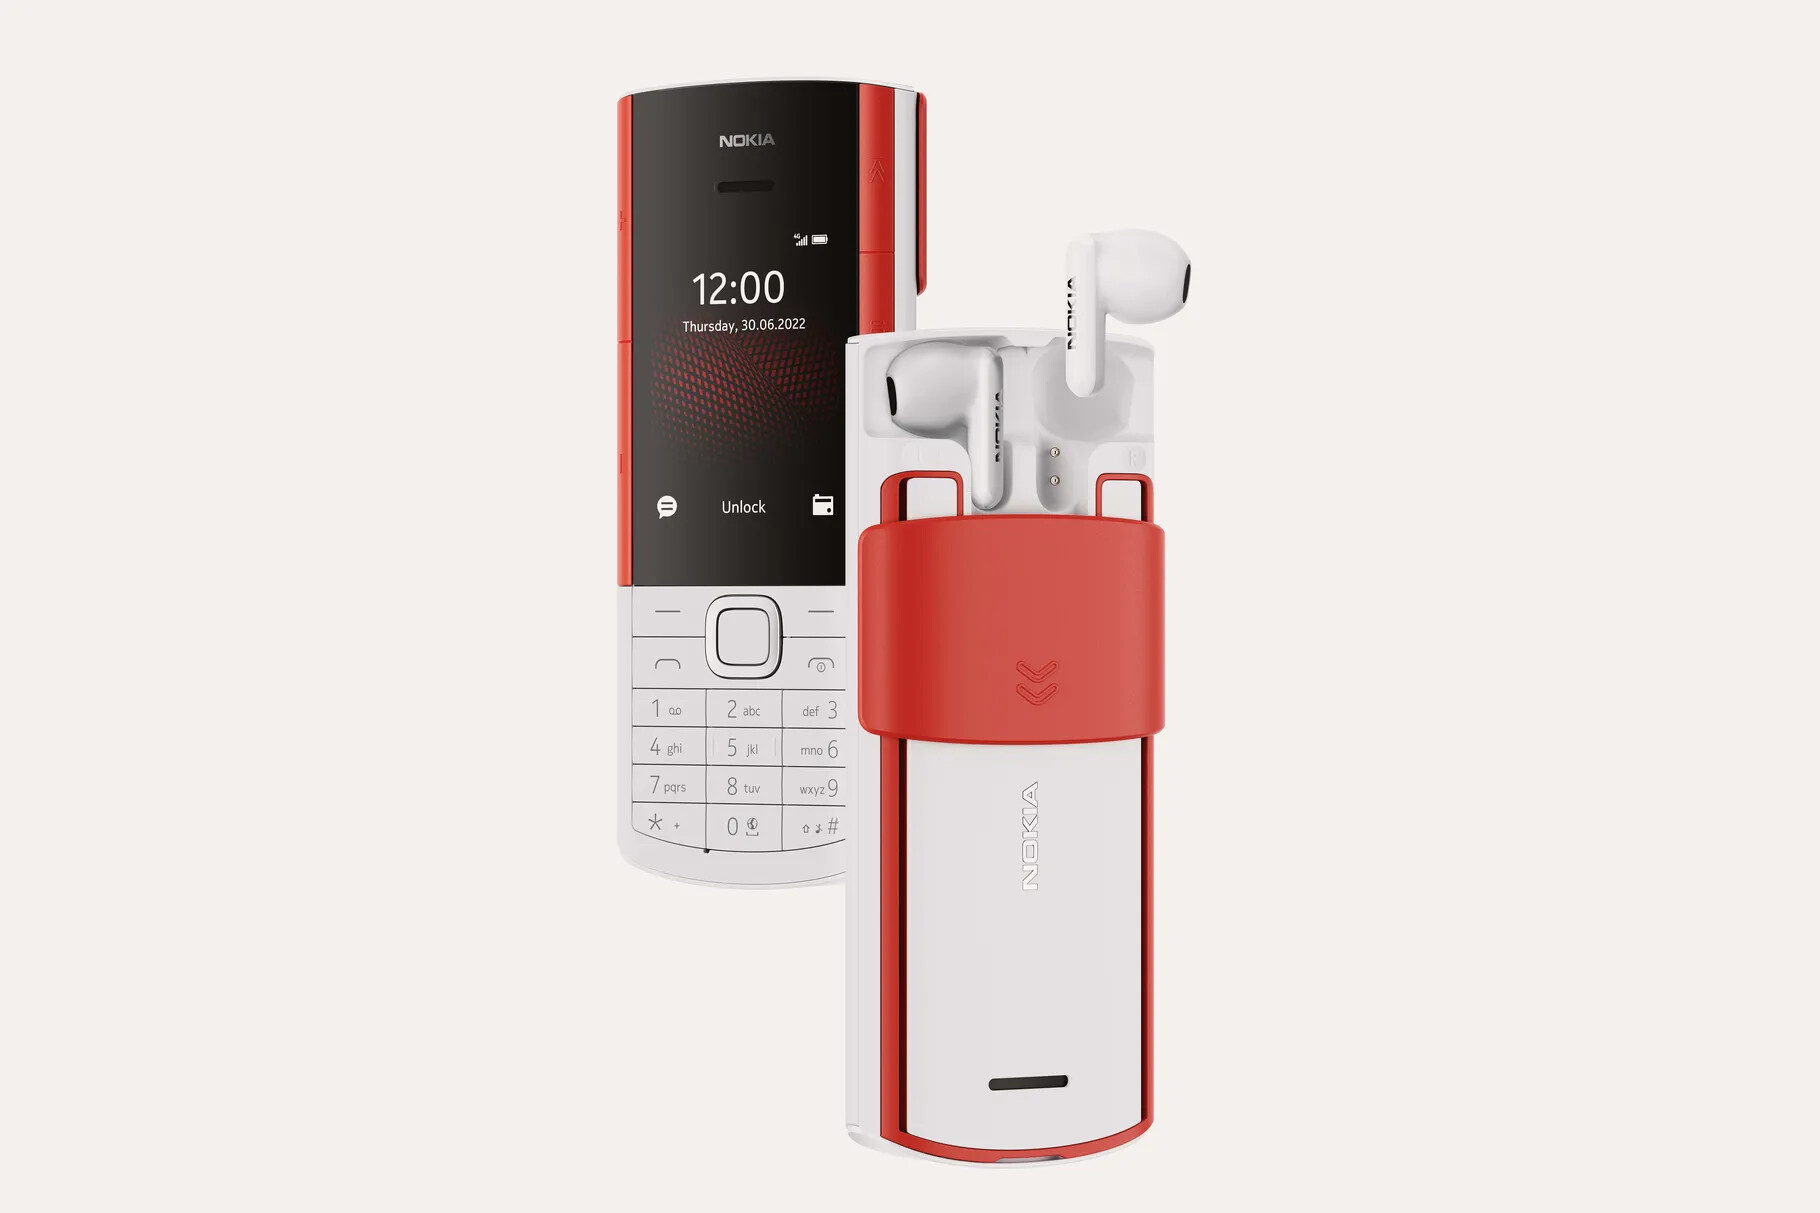 Nokia представили телефон со встроенными беспроводными наушниками. У новинки уже нашлись конкуренты